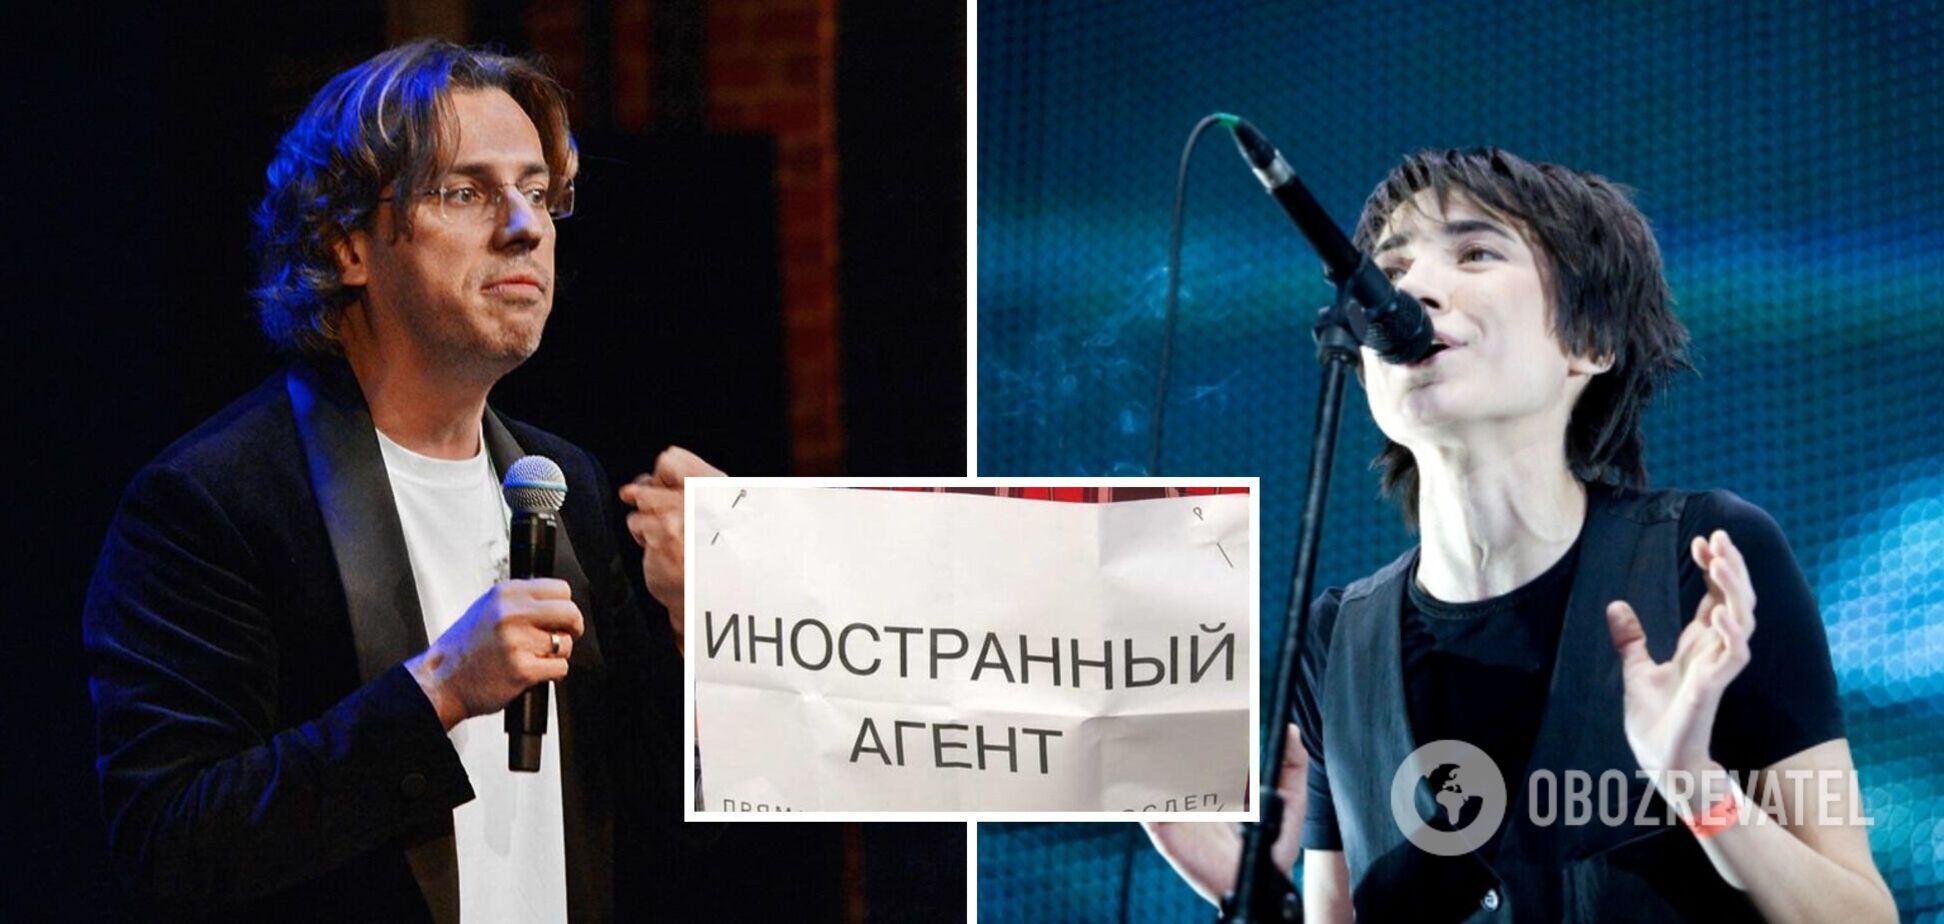 Галкин, Слепаков, Земфира и другие: в России звезды массово оспаривают статусы 'иноагентов'